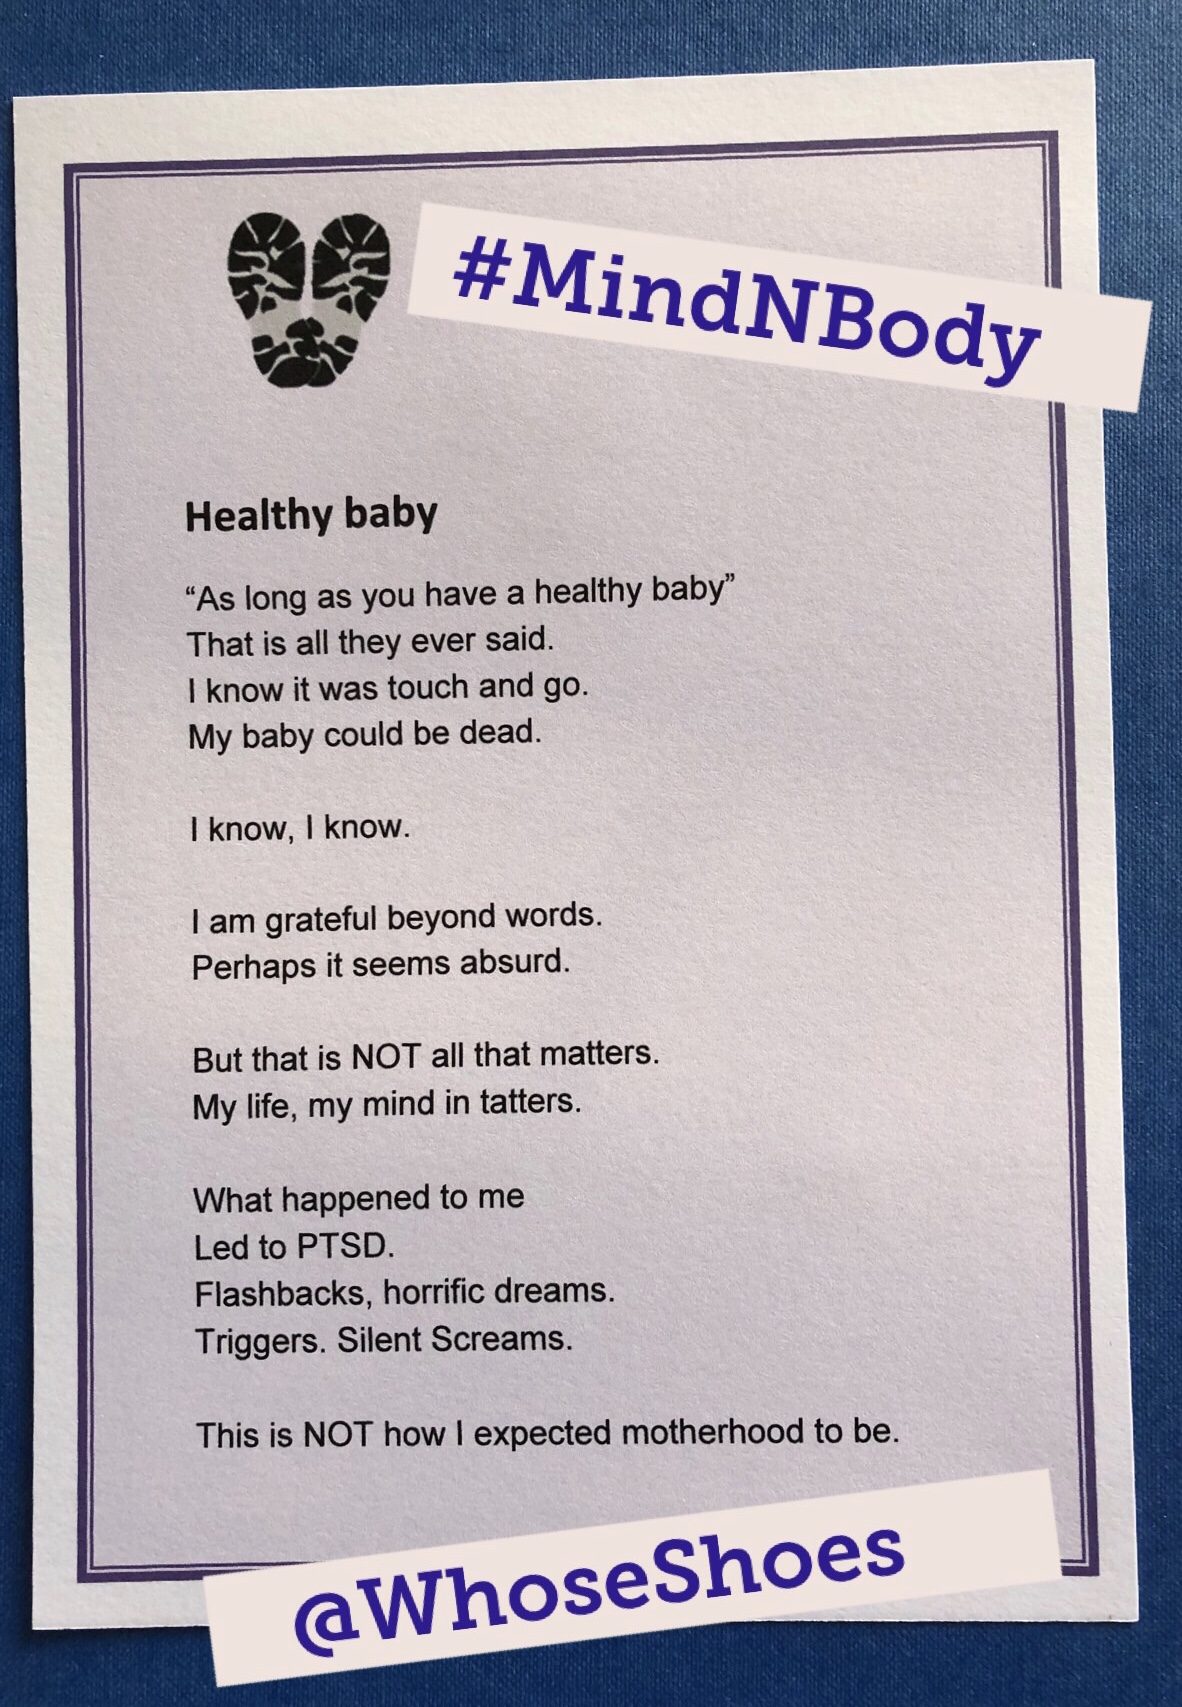 MindNBody poem – Healthy Baby